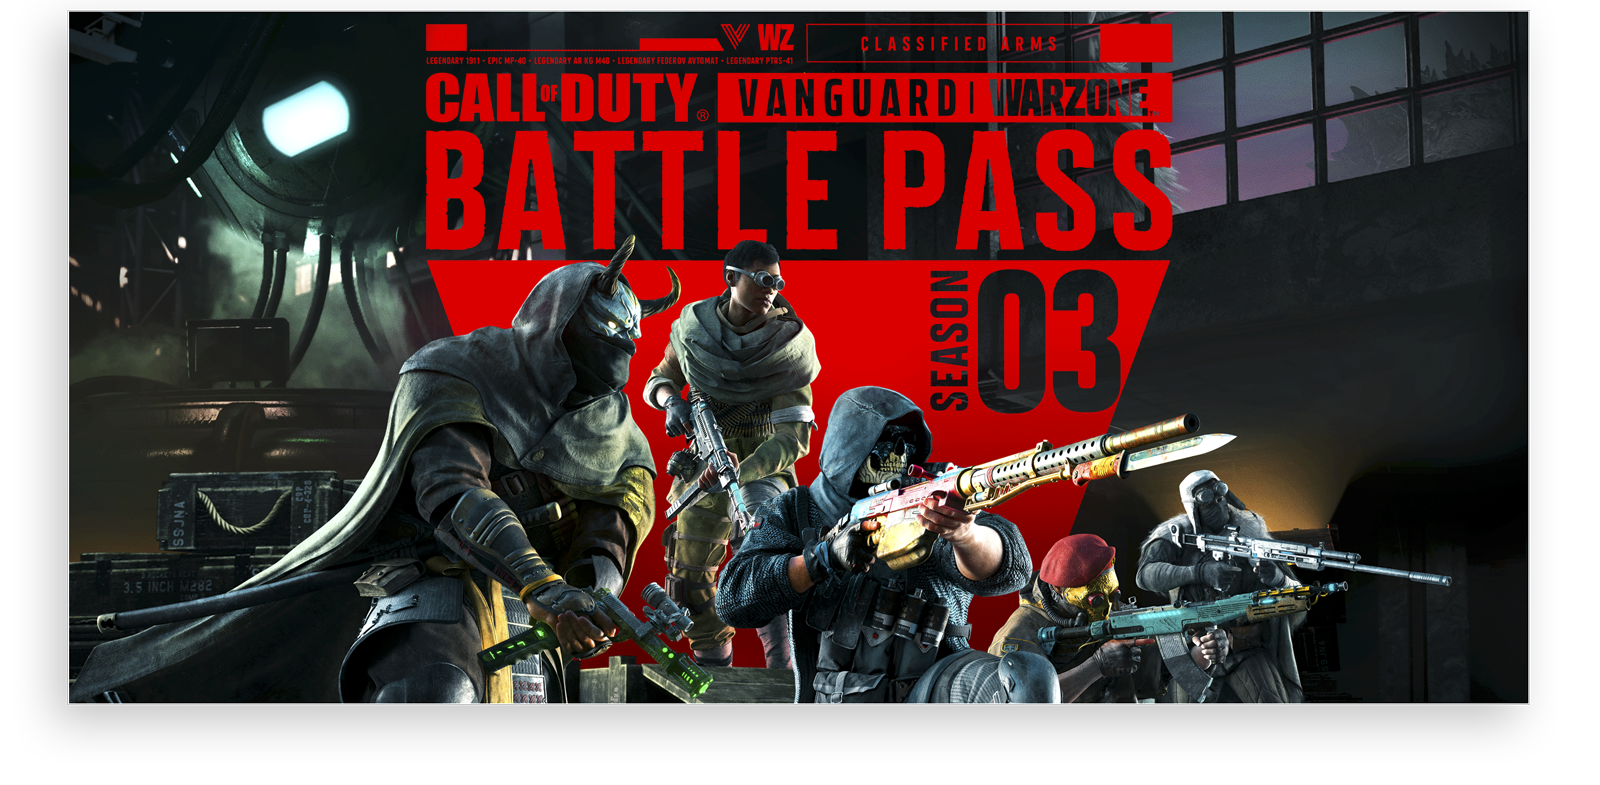 Artwork zu Call of Duty Vanguard und dem Battle Pass für Warzone Saison 3